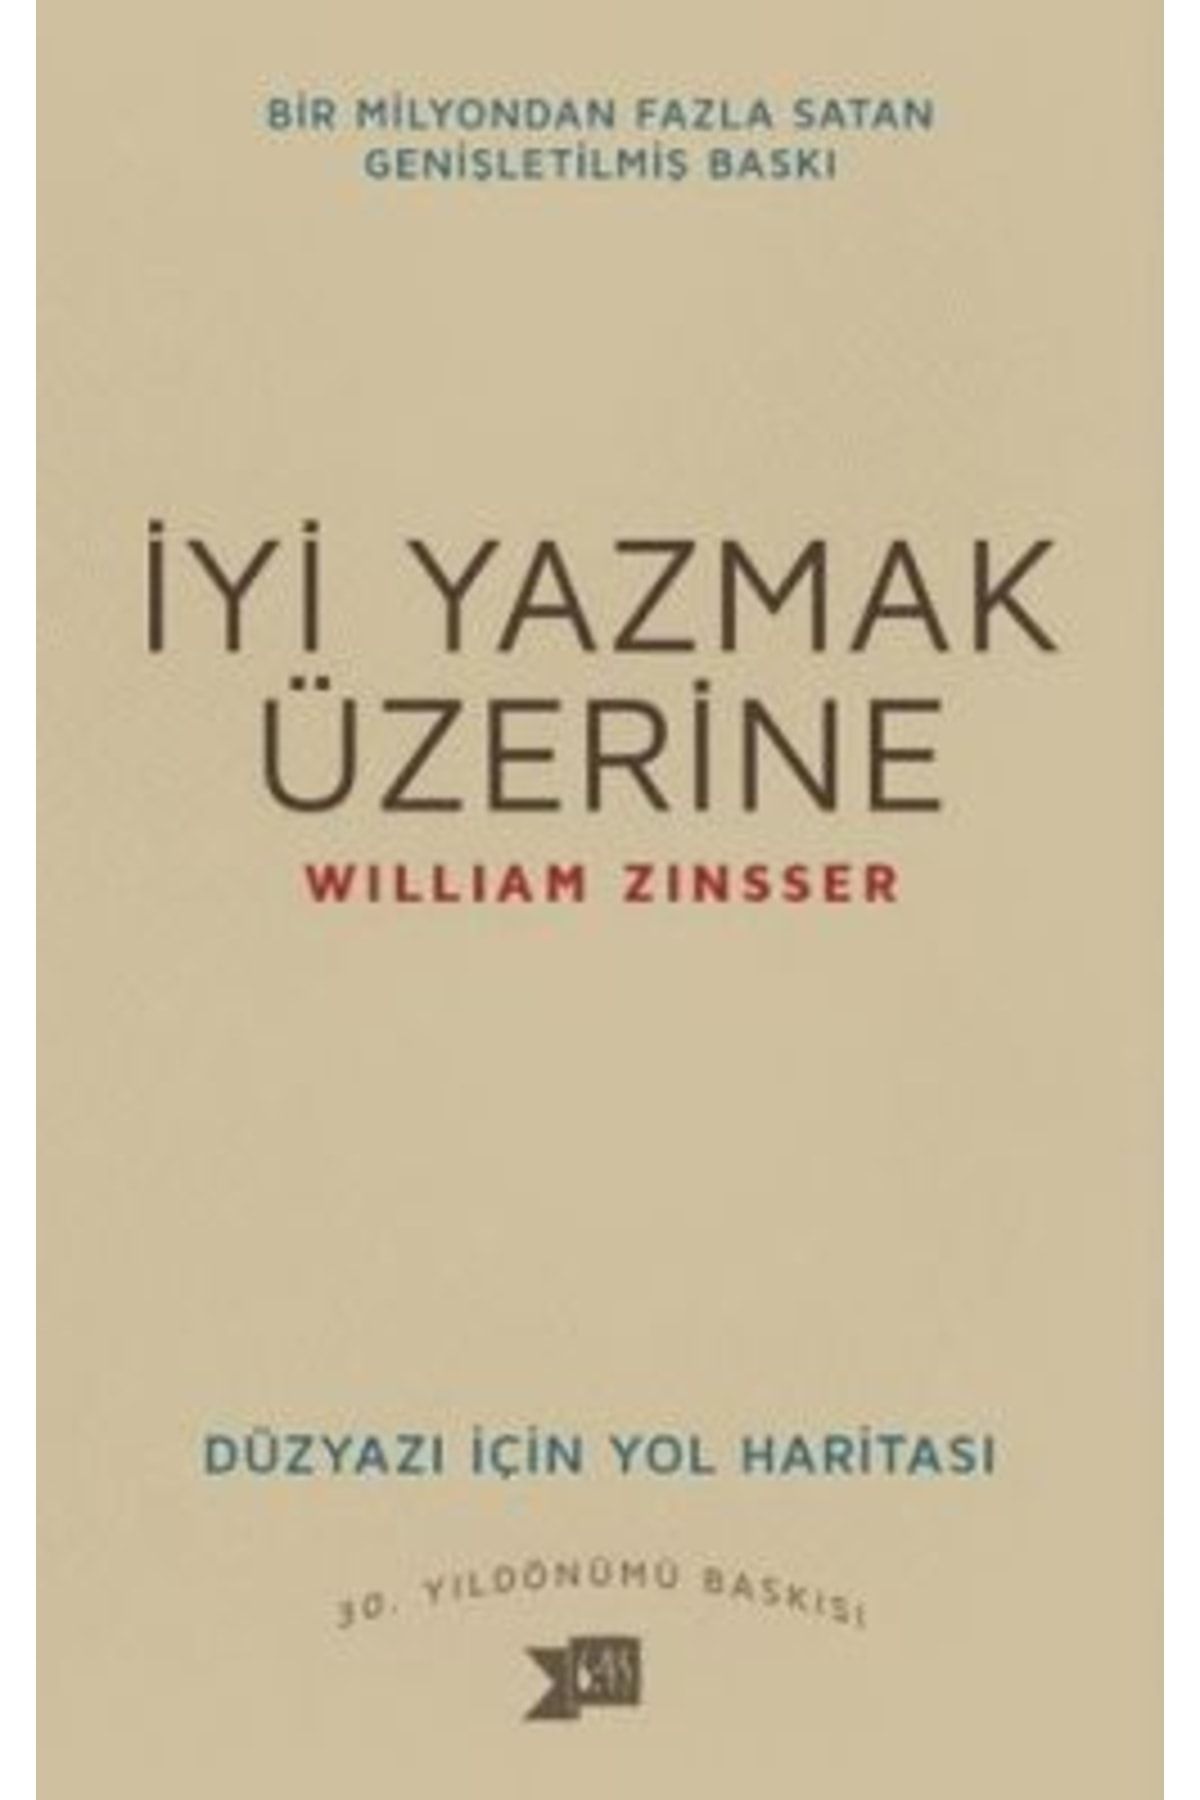 Altıkırkbeş Yayınları Iyi Yazmak Üzerine - Düzyazı Için Yol Haritası - - William Zinsser Kitabı